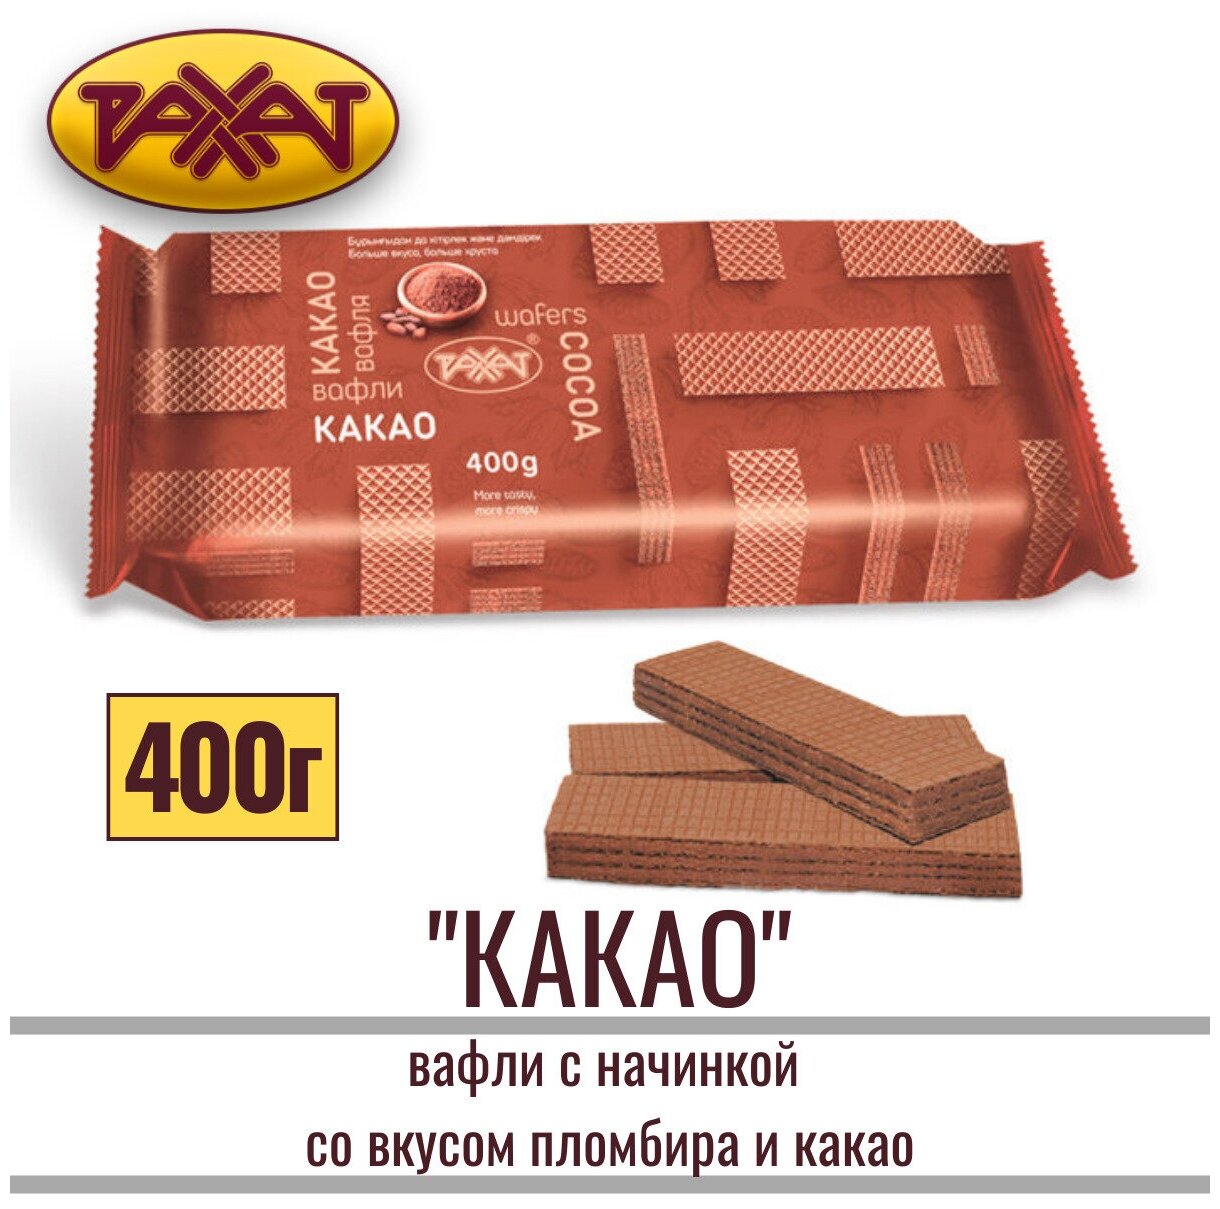 Вафли "рахат какао" с начинкой с большим содержанием какао со вкусом пломбира и какао, 400 г